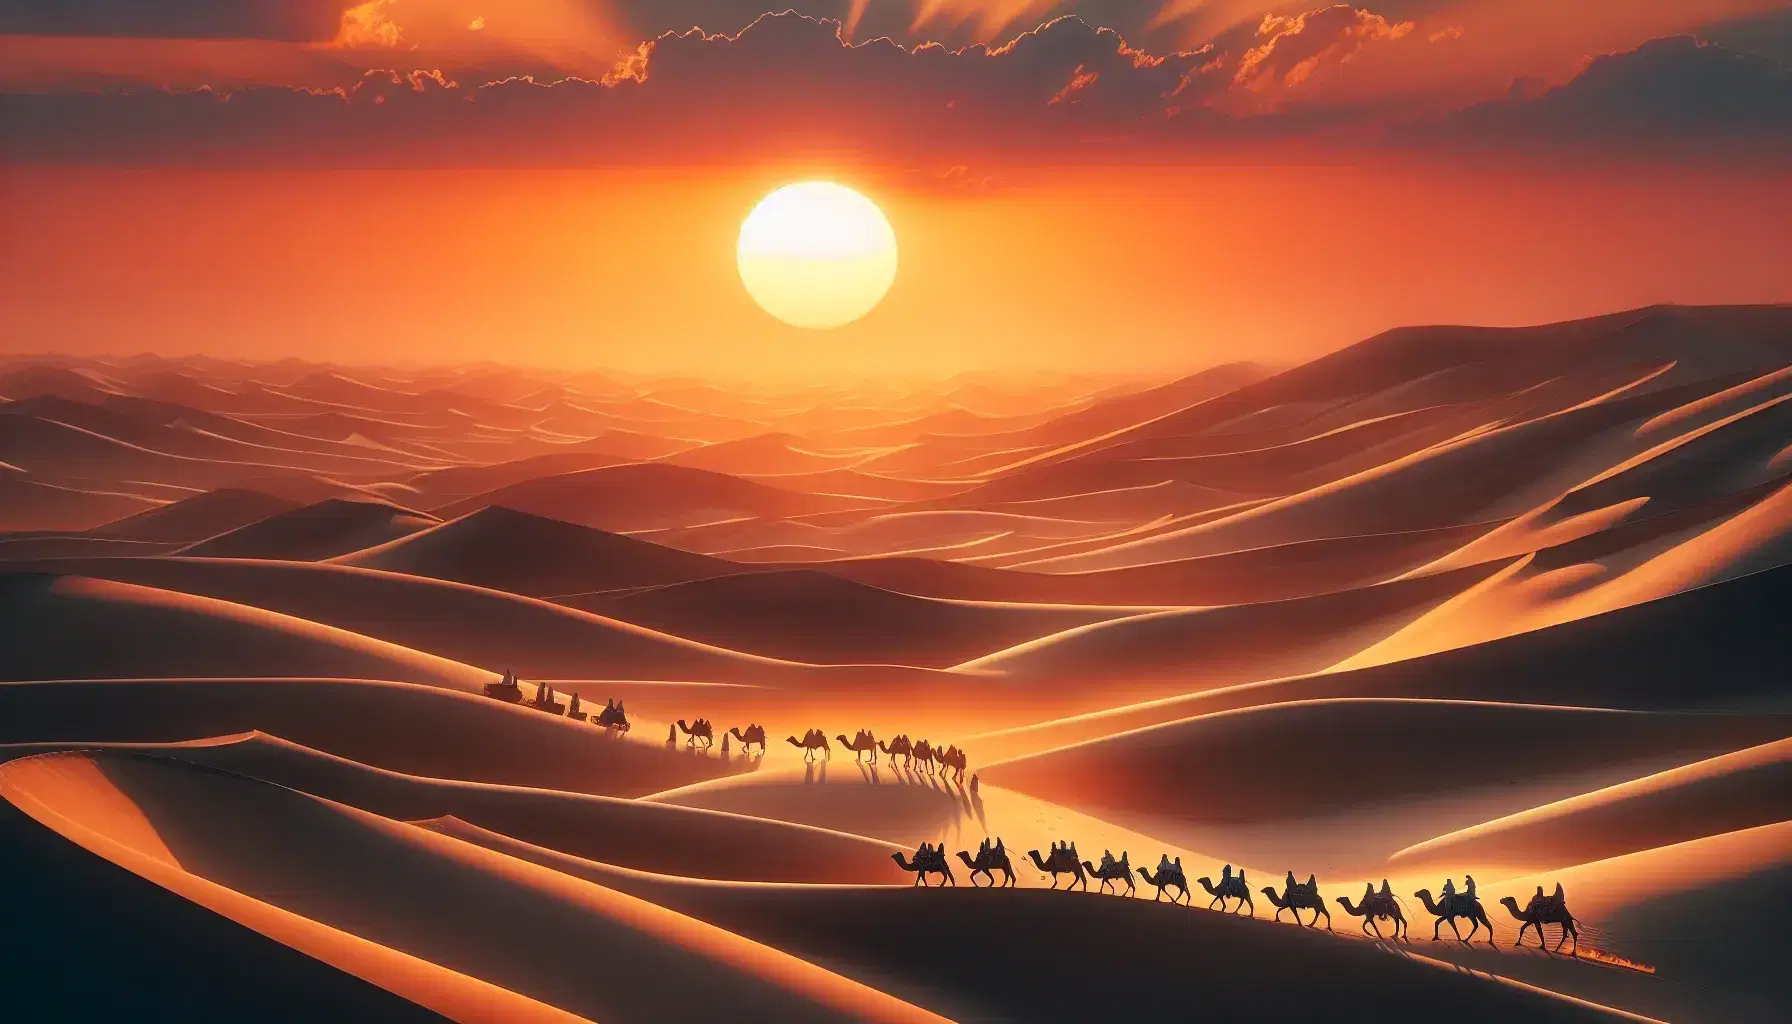 Tramonto nel deserto della Penisola Araba con dune ondulate, cielo infuocato e silhouette di una carovana di cammelli.